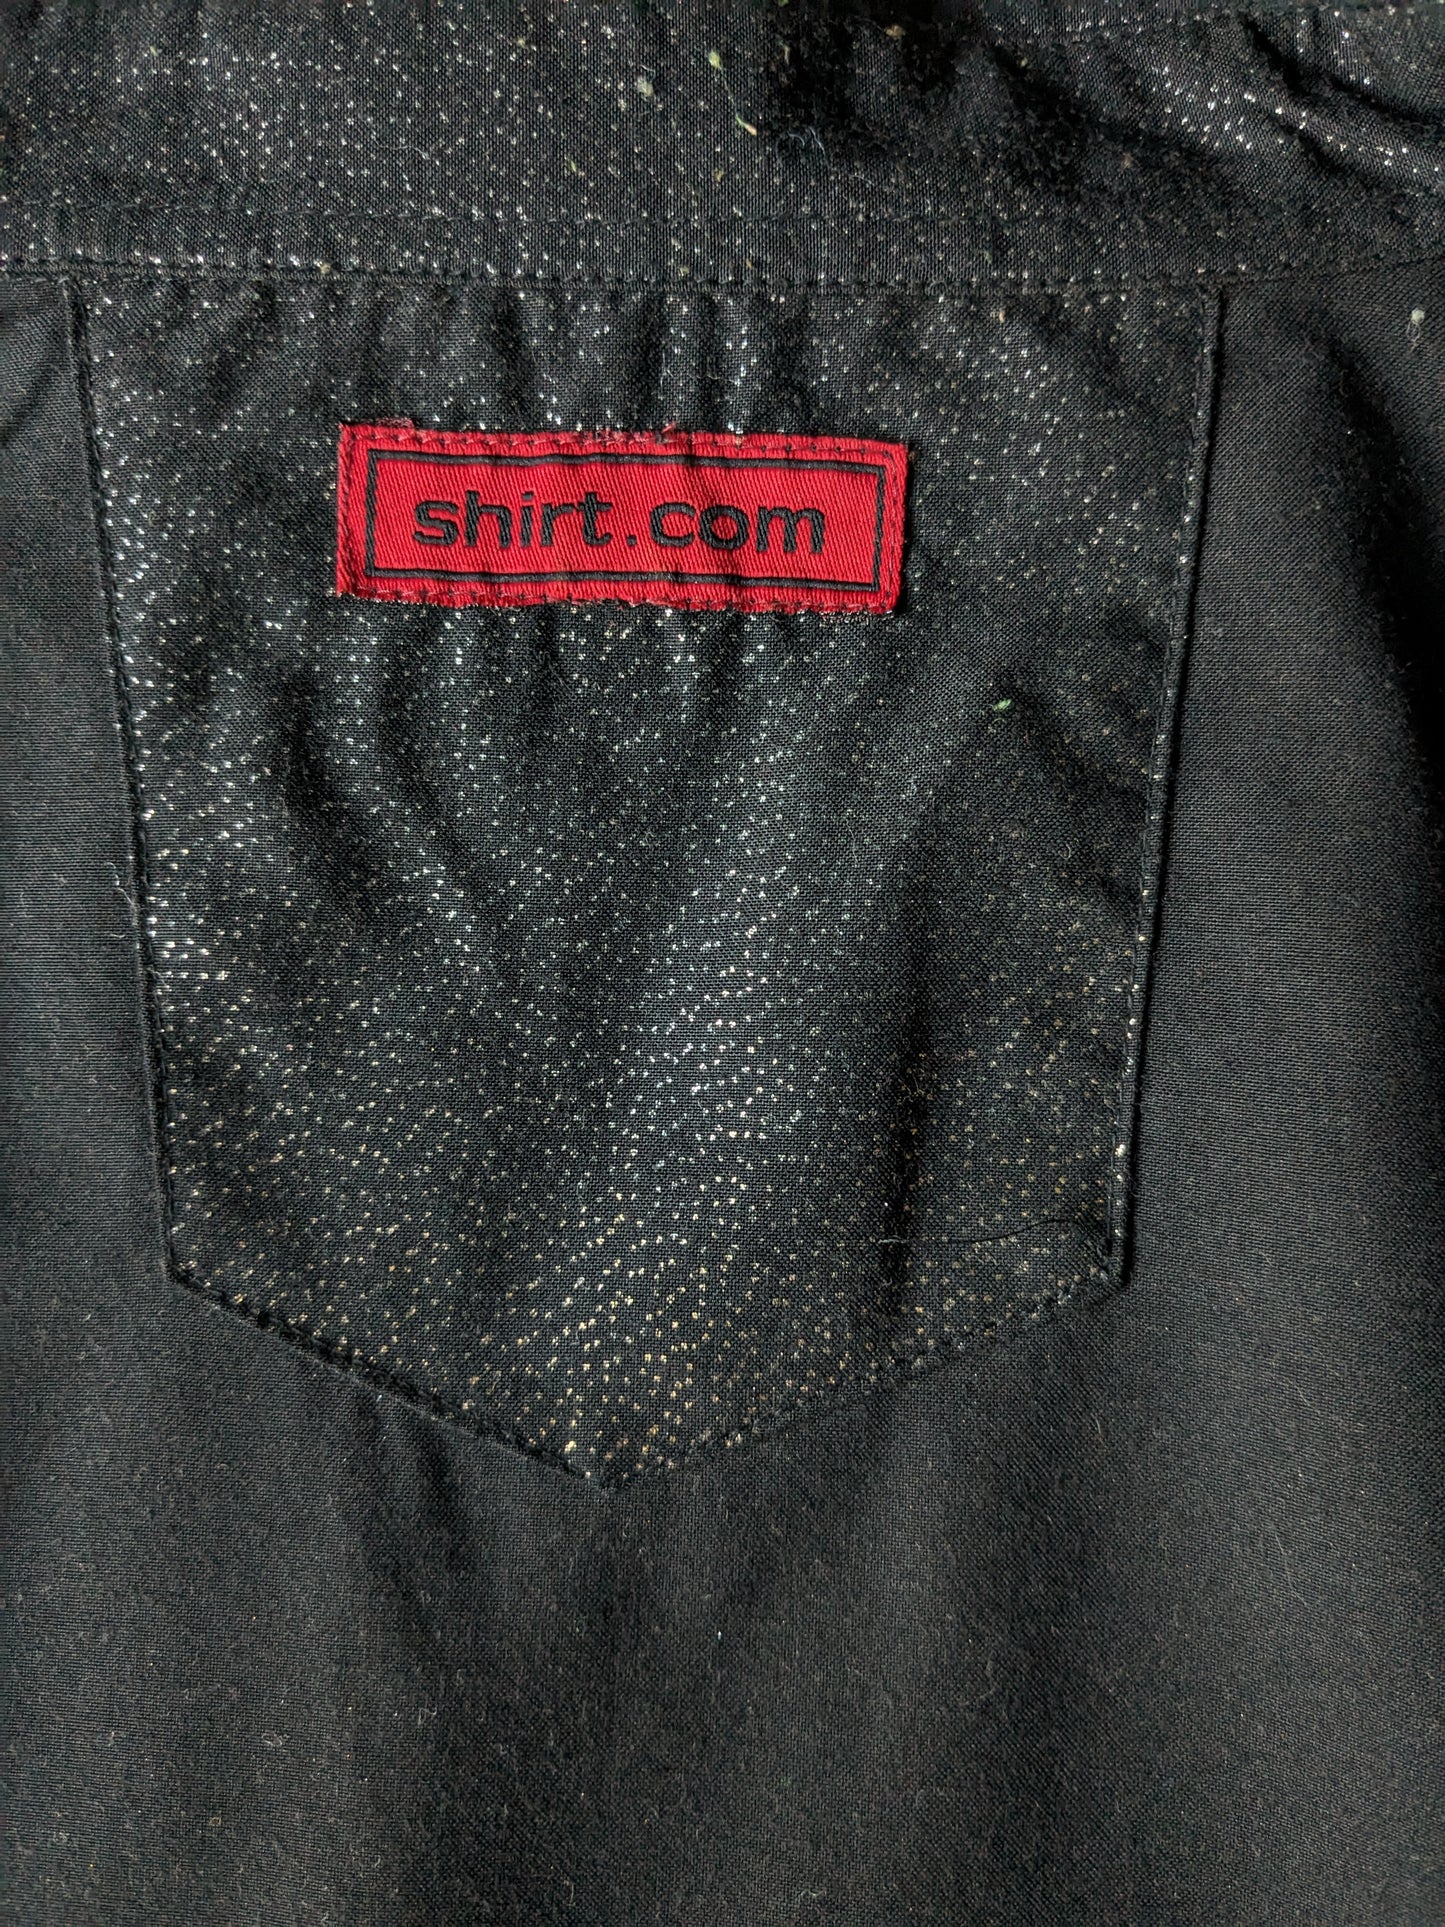 Shirt.com Shirt. Black Gold -colorato punteggiato. Bei pulsanti. Dimensione XL / XXL-2XL.